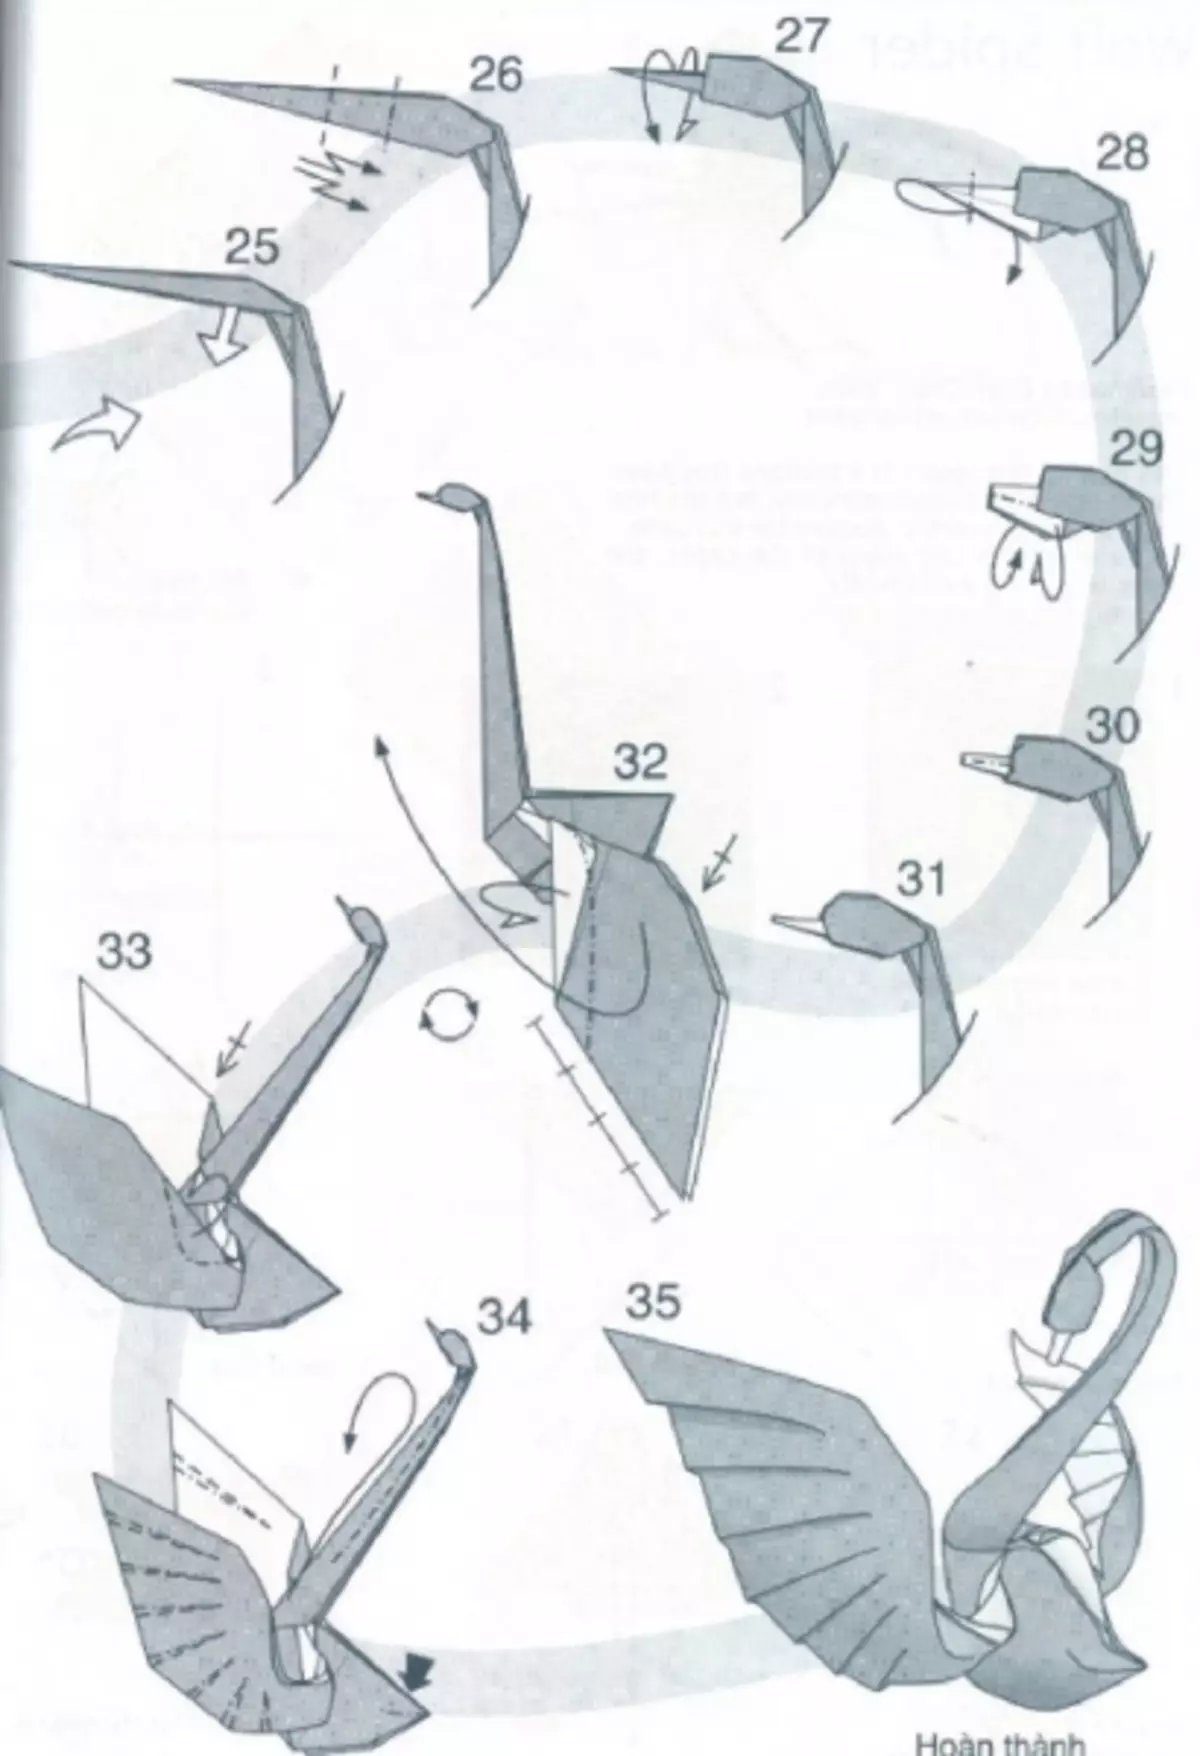 Лебедь из бумаги инструкция. Как делается оригами лебедь. Оригами лебедь схема пошаговая инструкция. Оригами лебедь схема сборки пошагово для начинающих. Инструкцию как делать оригами лебедь.